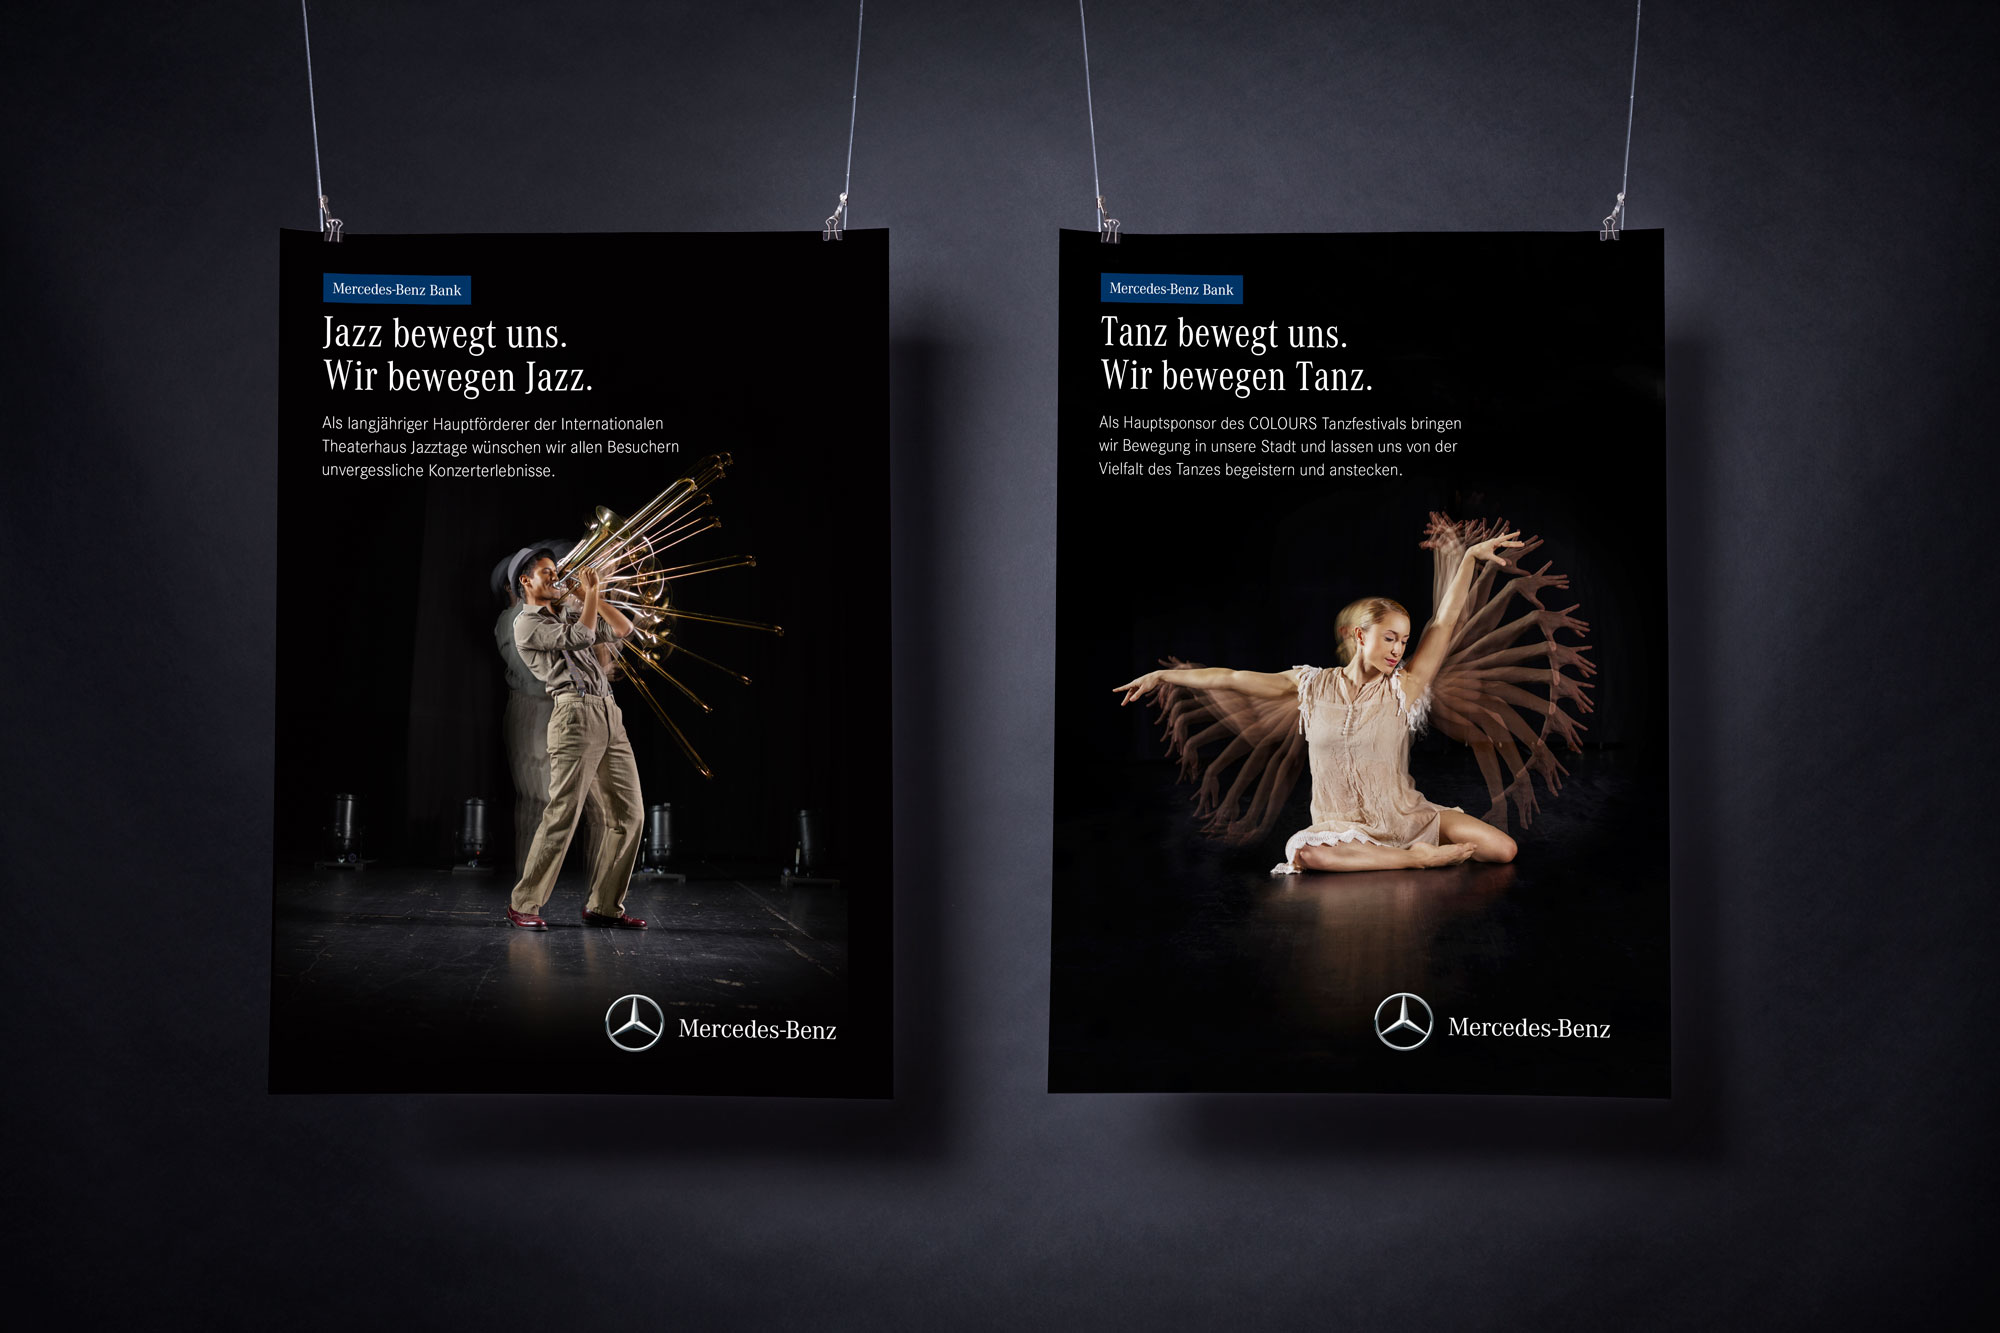 75a gestaltet eine Plakatkampagne für die Mercedes-Benz Bank